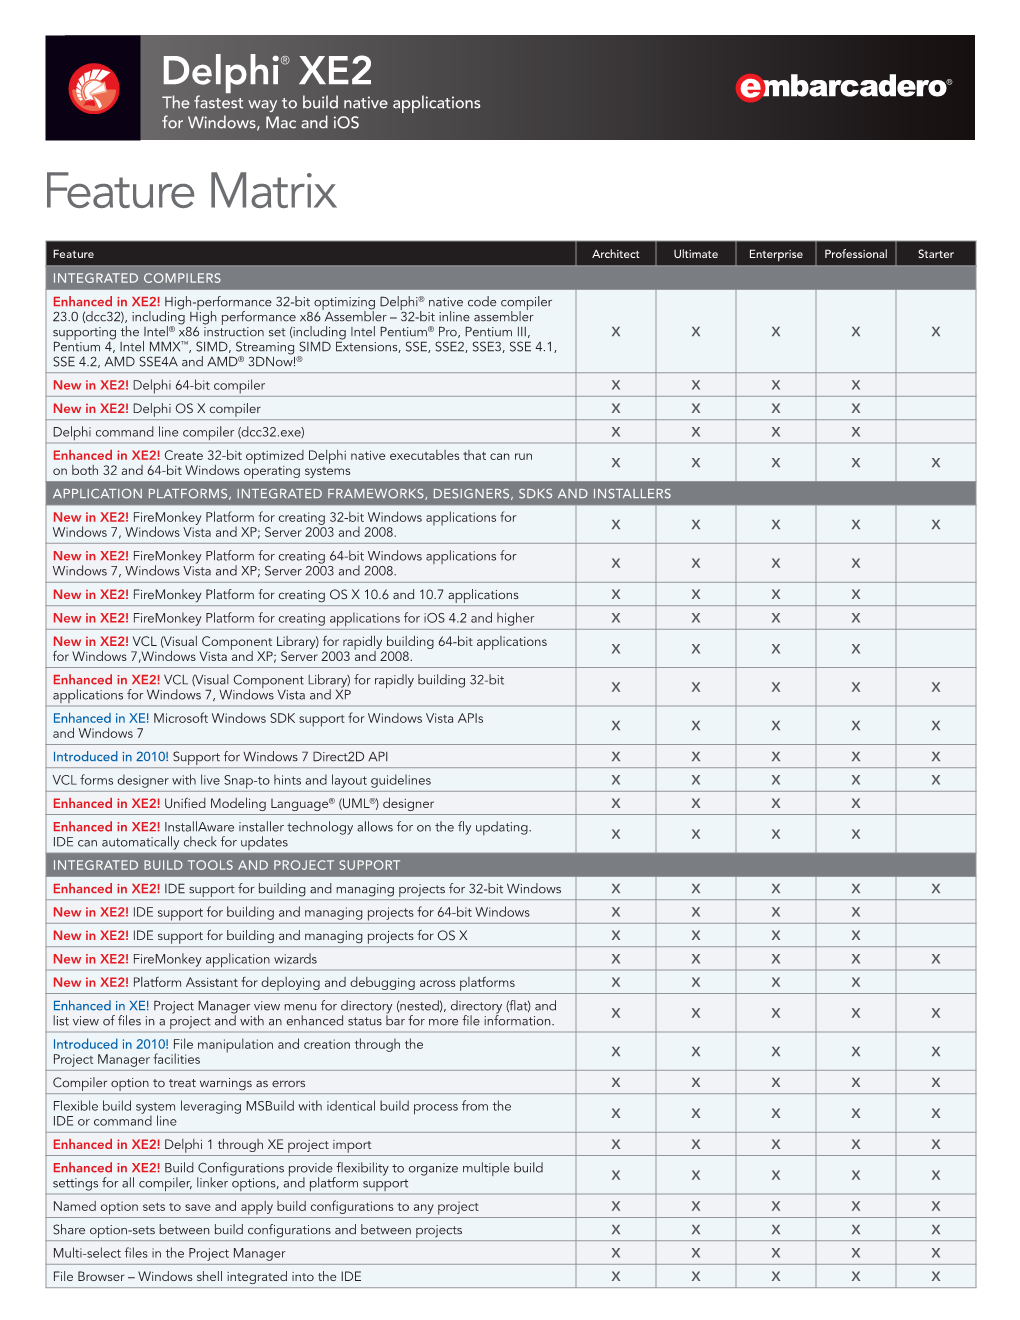 Delphi XE2 Feature Matrix